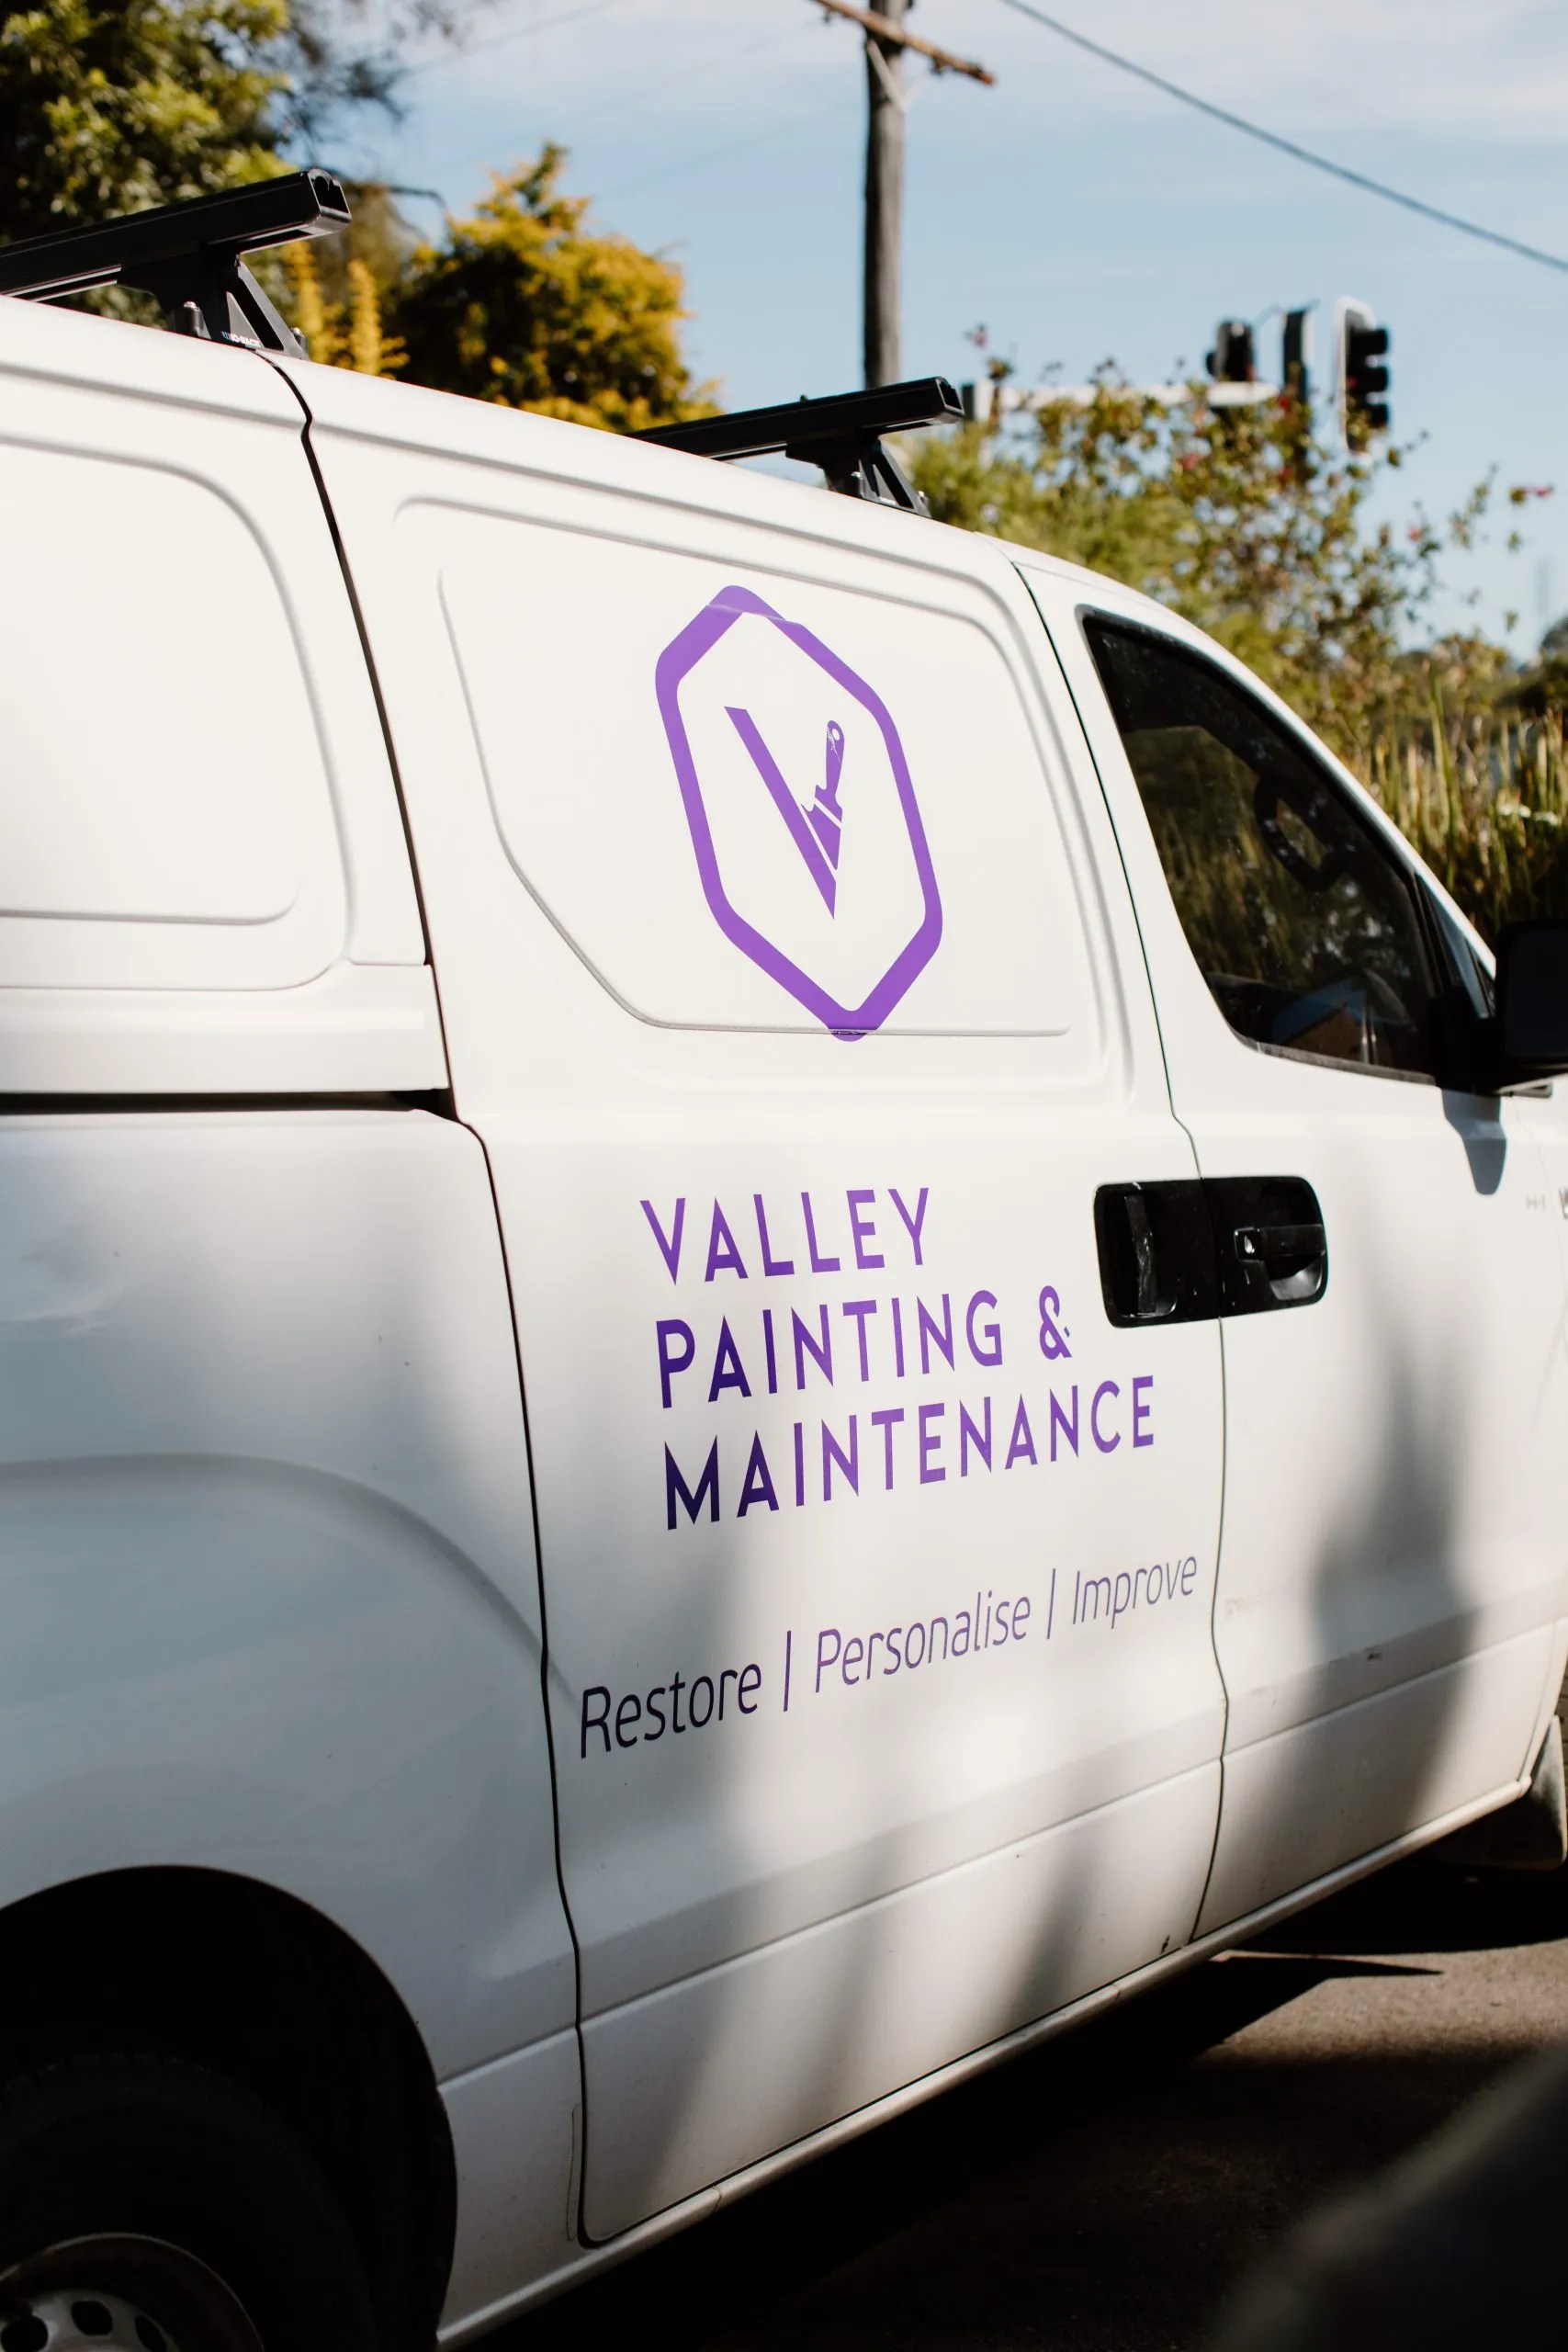 Valley painting & maintenance van.